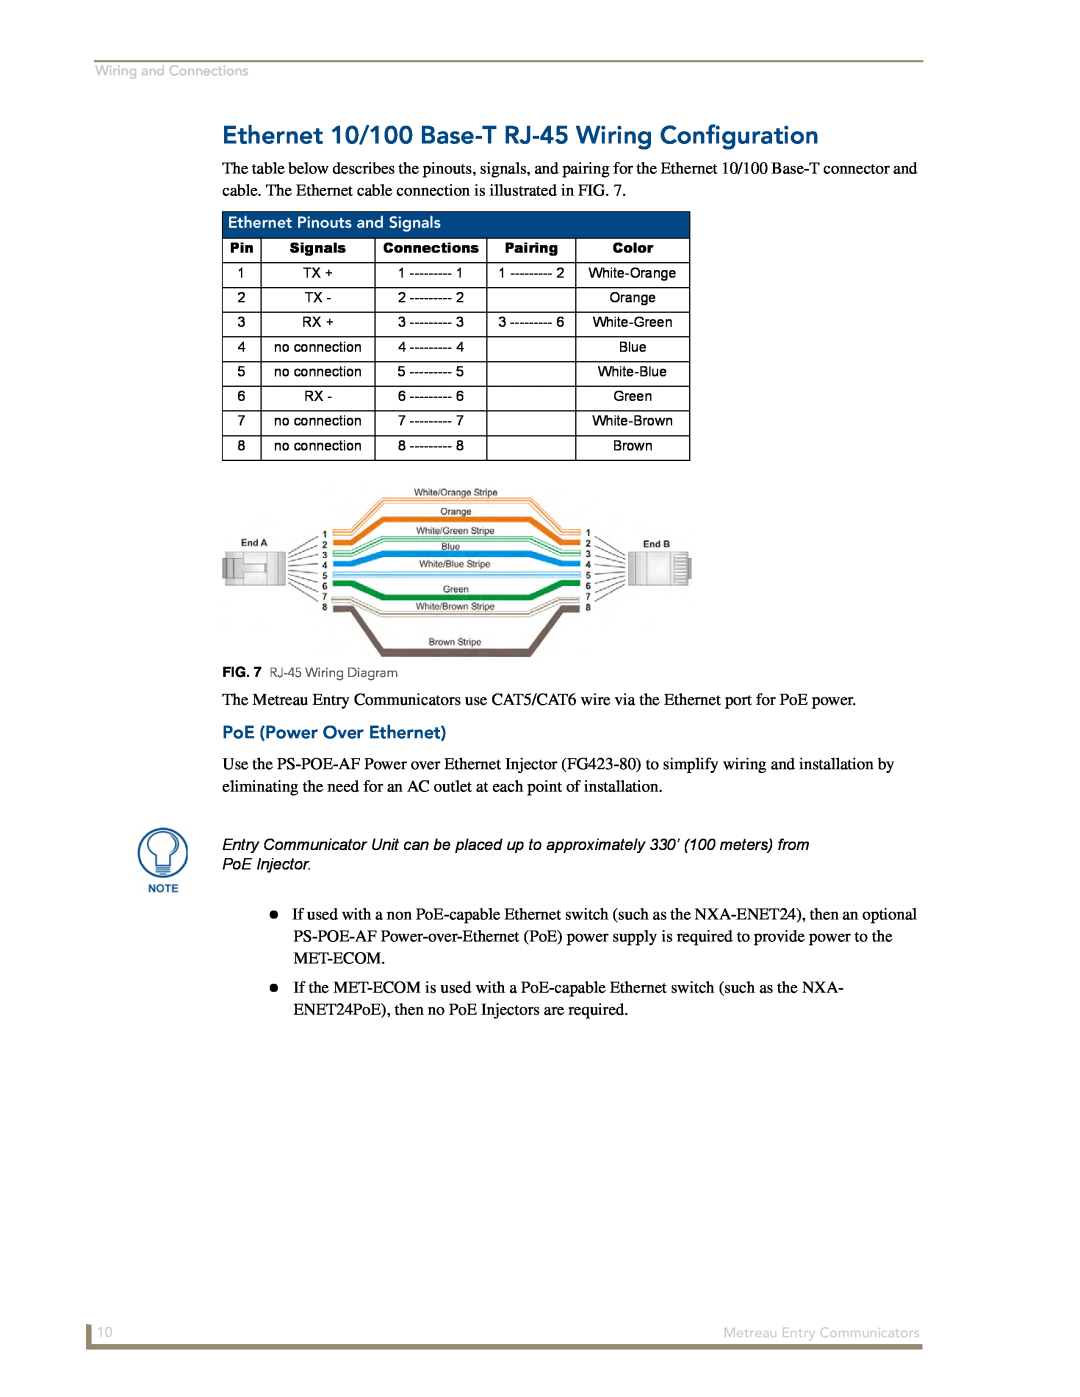 AMX MET-ECOM-D manual Ethernet 10/100 Base-T RJ-45Wiring Configuration, PoE Power Over Ethernet 